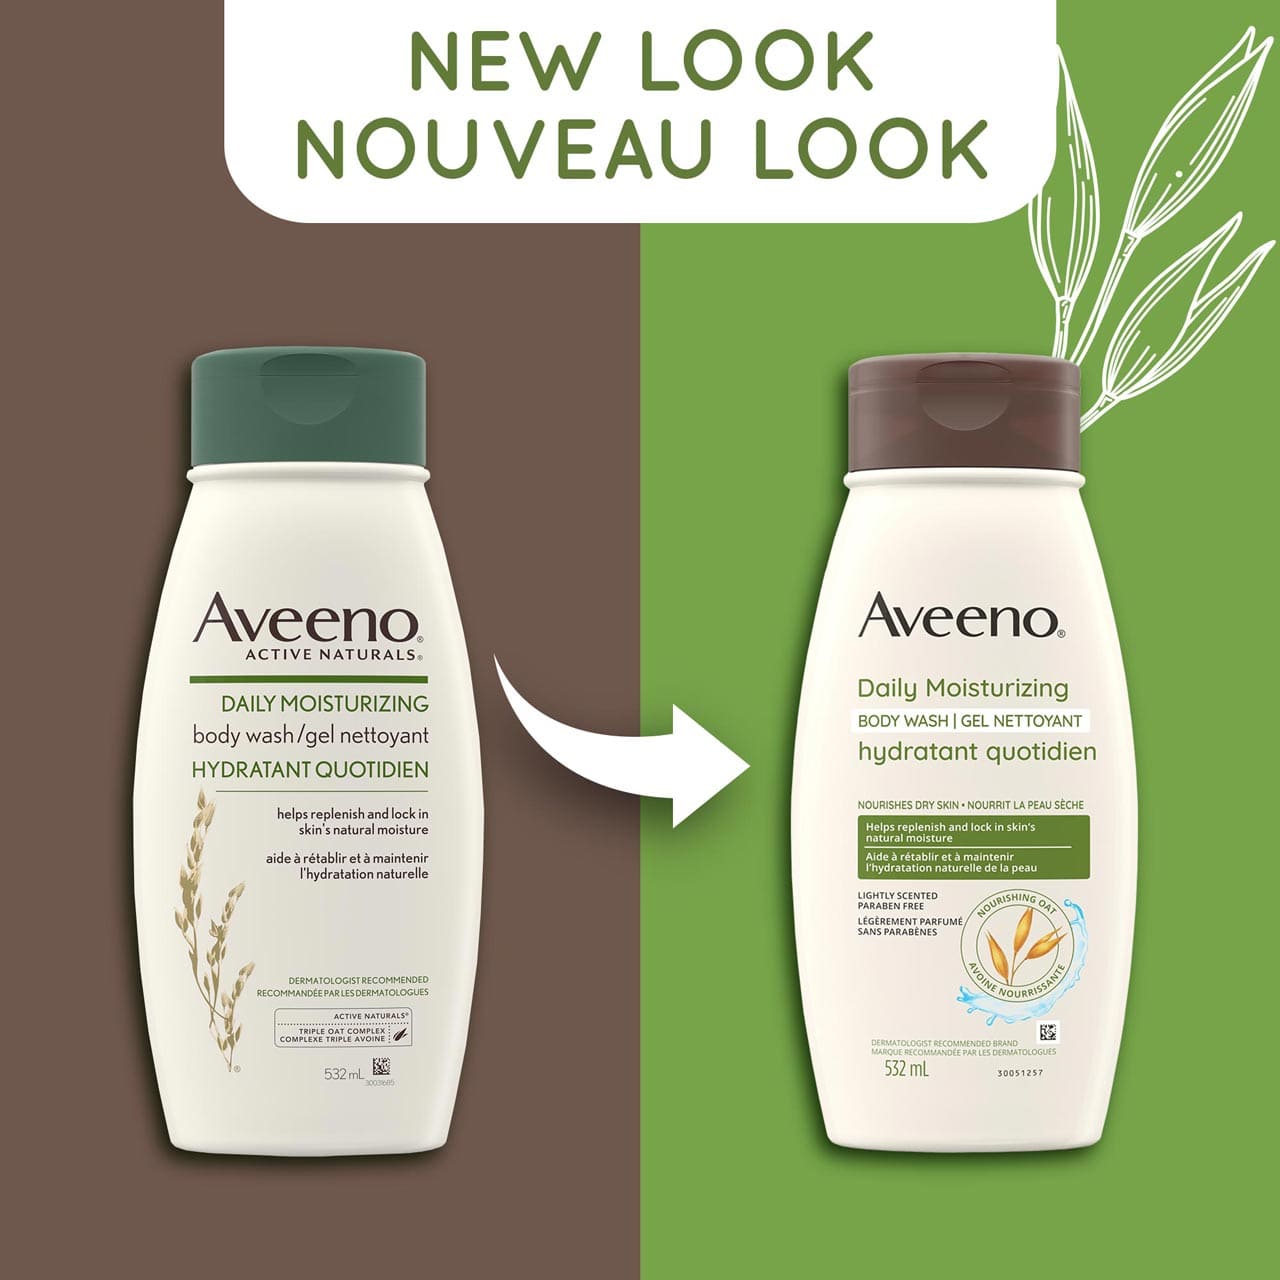 Un ancien et un nouveau flacon à presser de 532 ml du gel nettoyant hydratant quotidien Aveeno, avec la mention « Nouveau look »